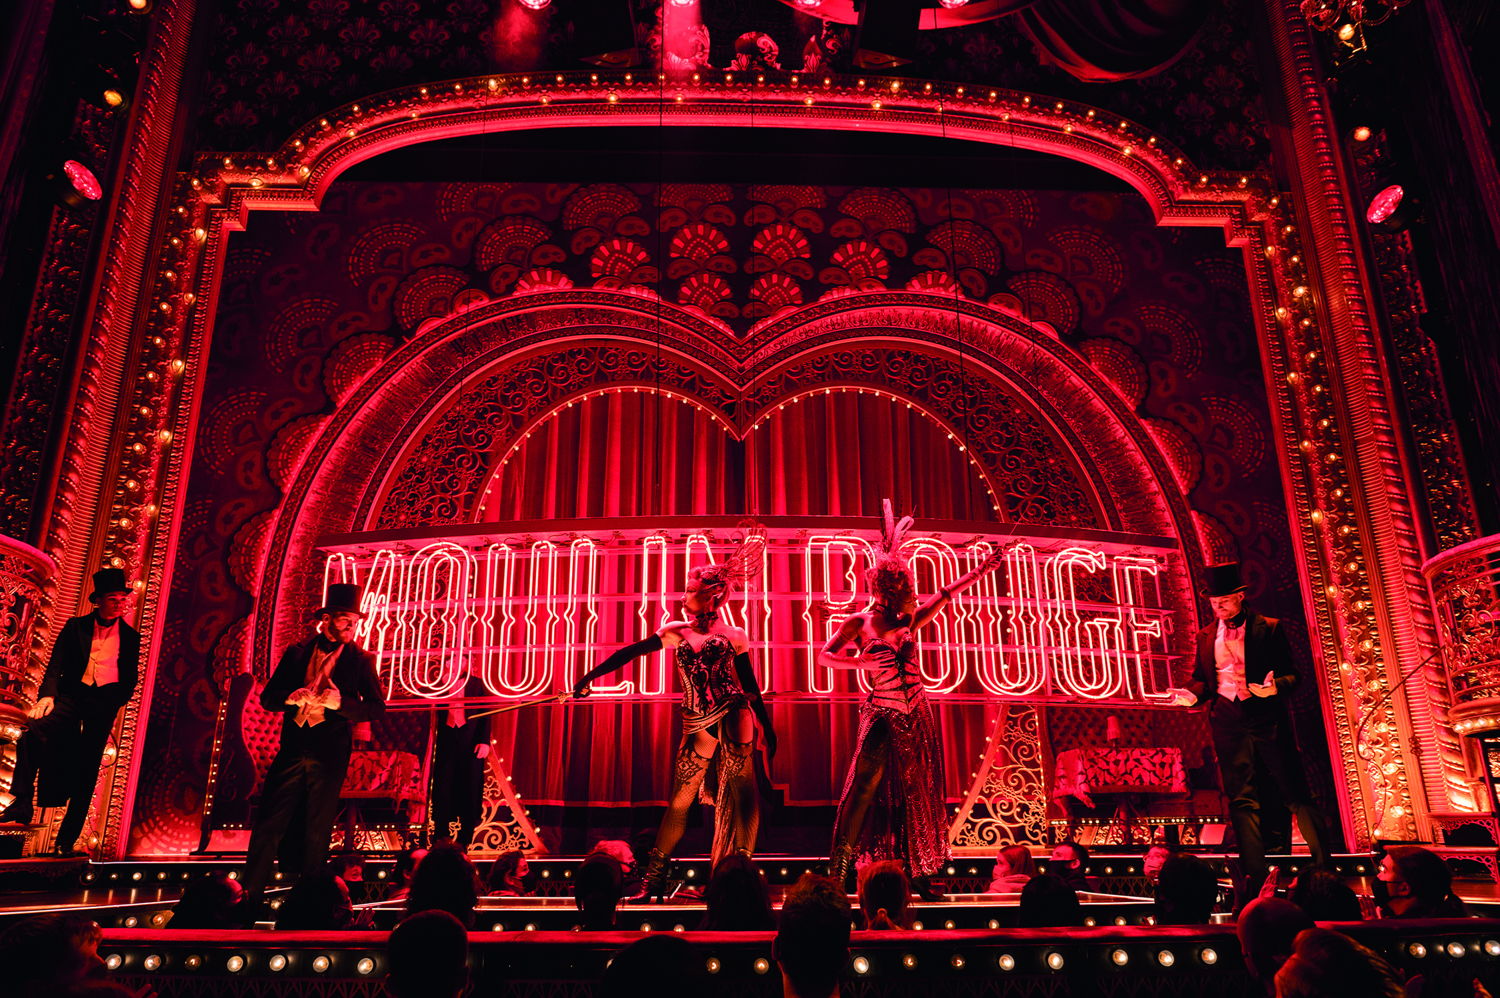 Moulin Rouge! The Musical. Photo credit: Matt Crockett